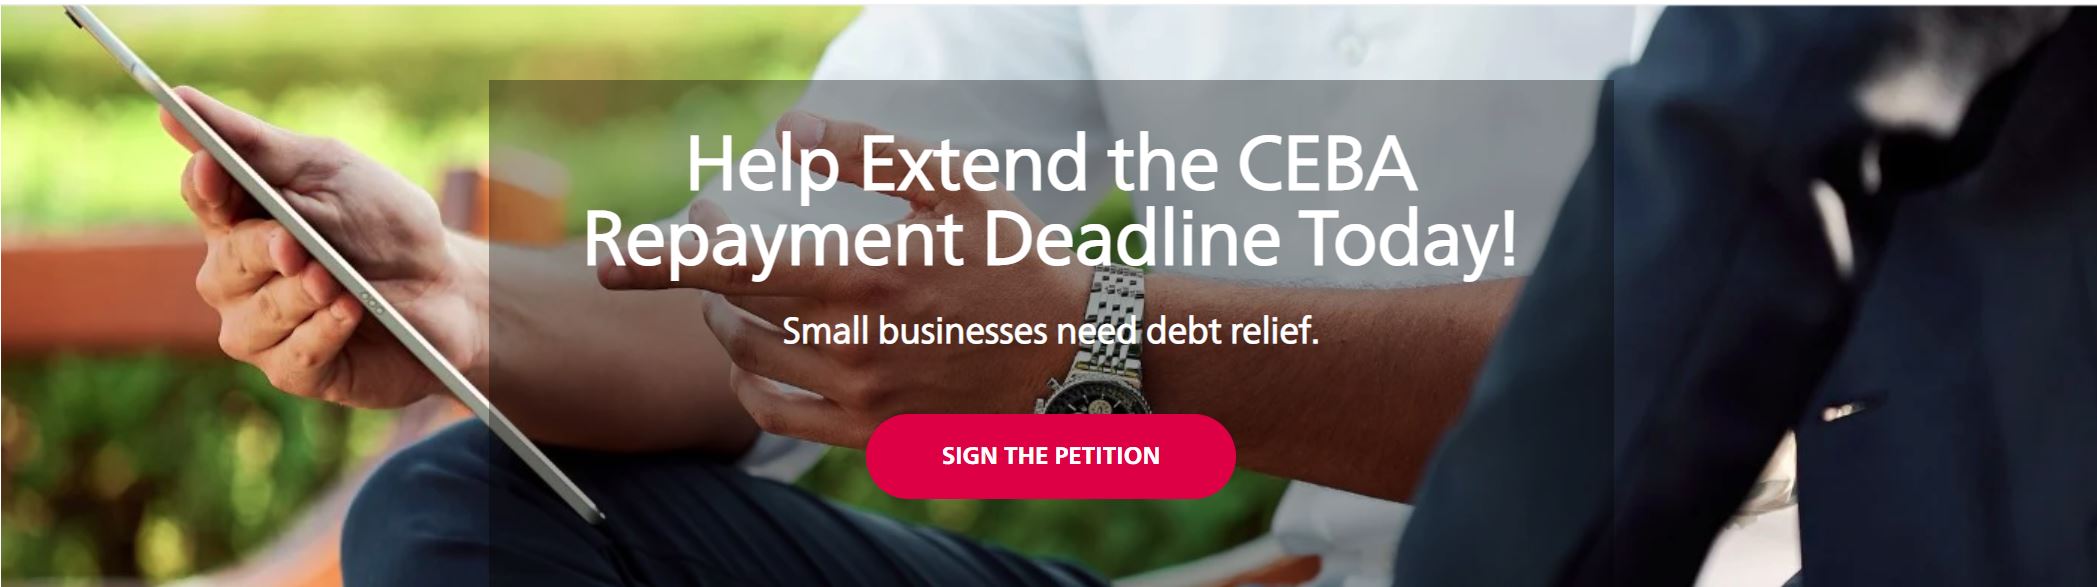 25万家小型企业面临关闭的风险：CFIB敦促政府放宽偿还期限